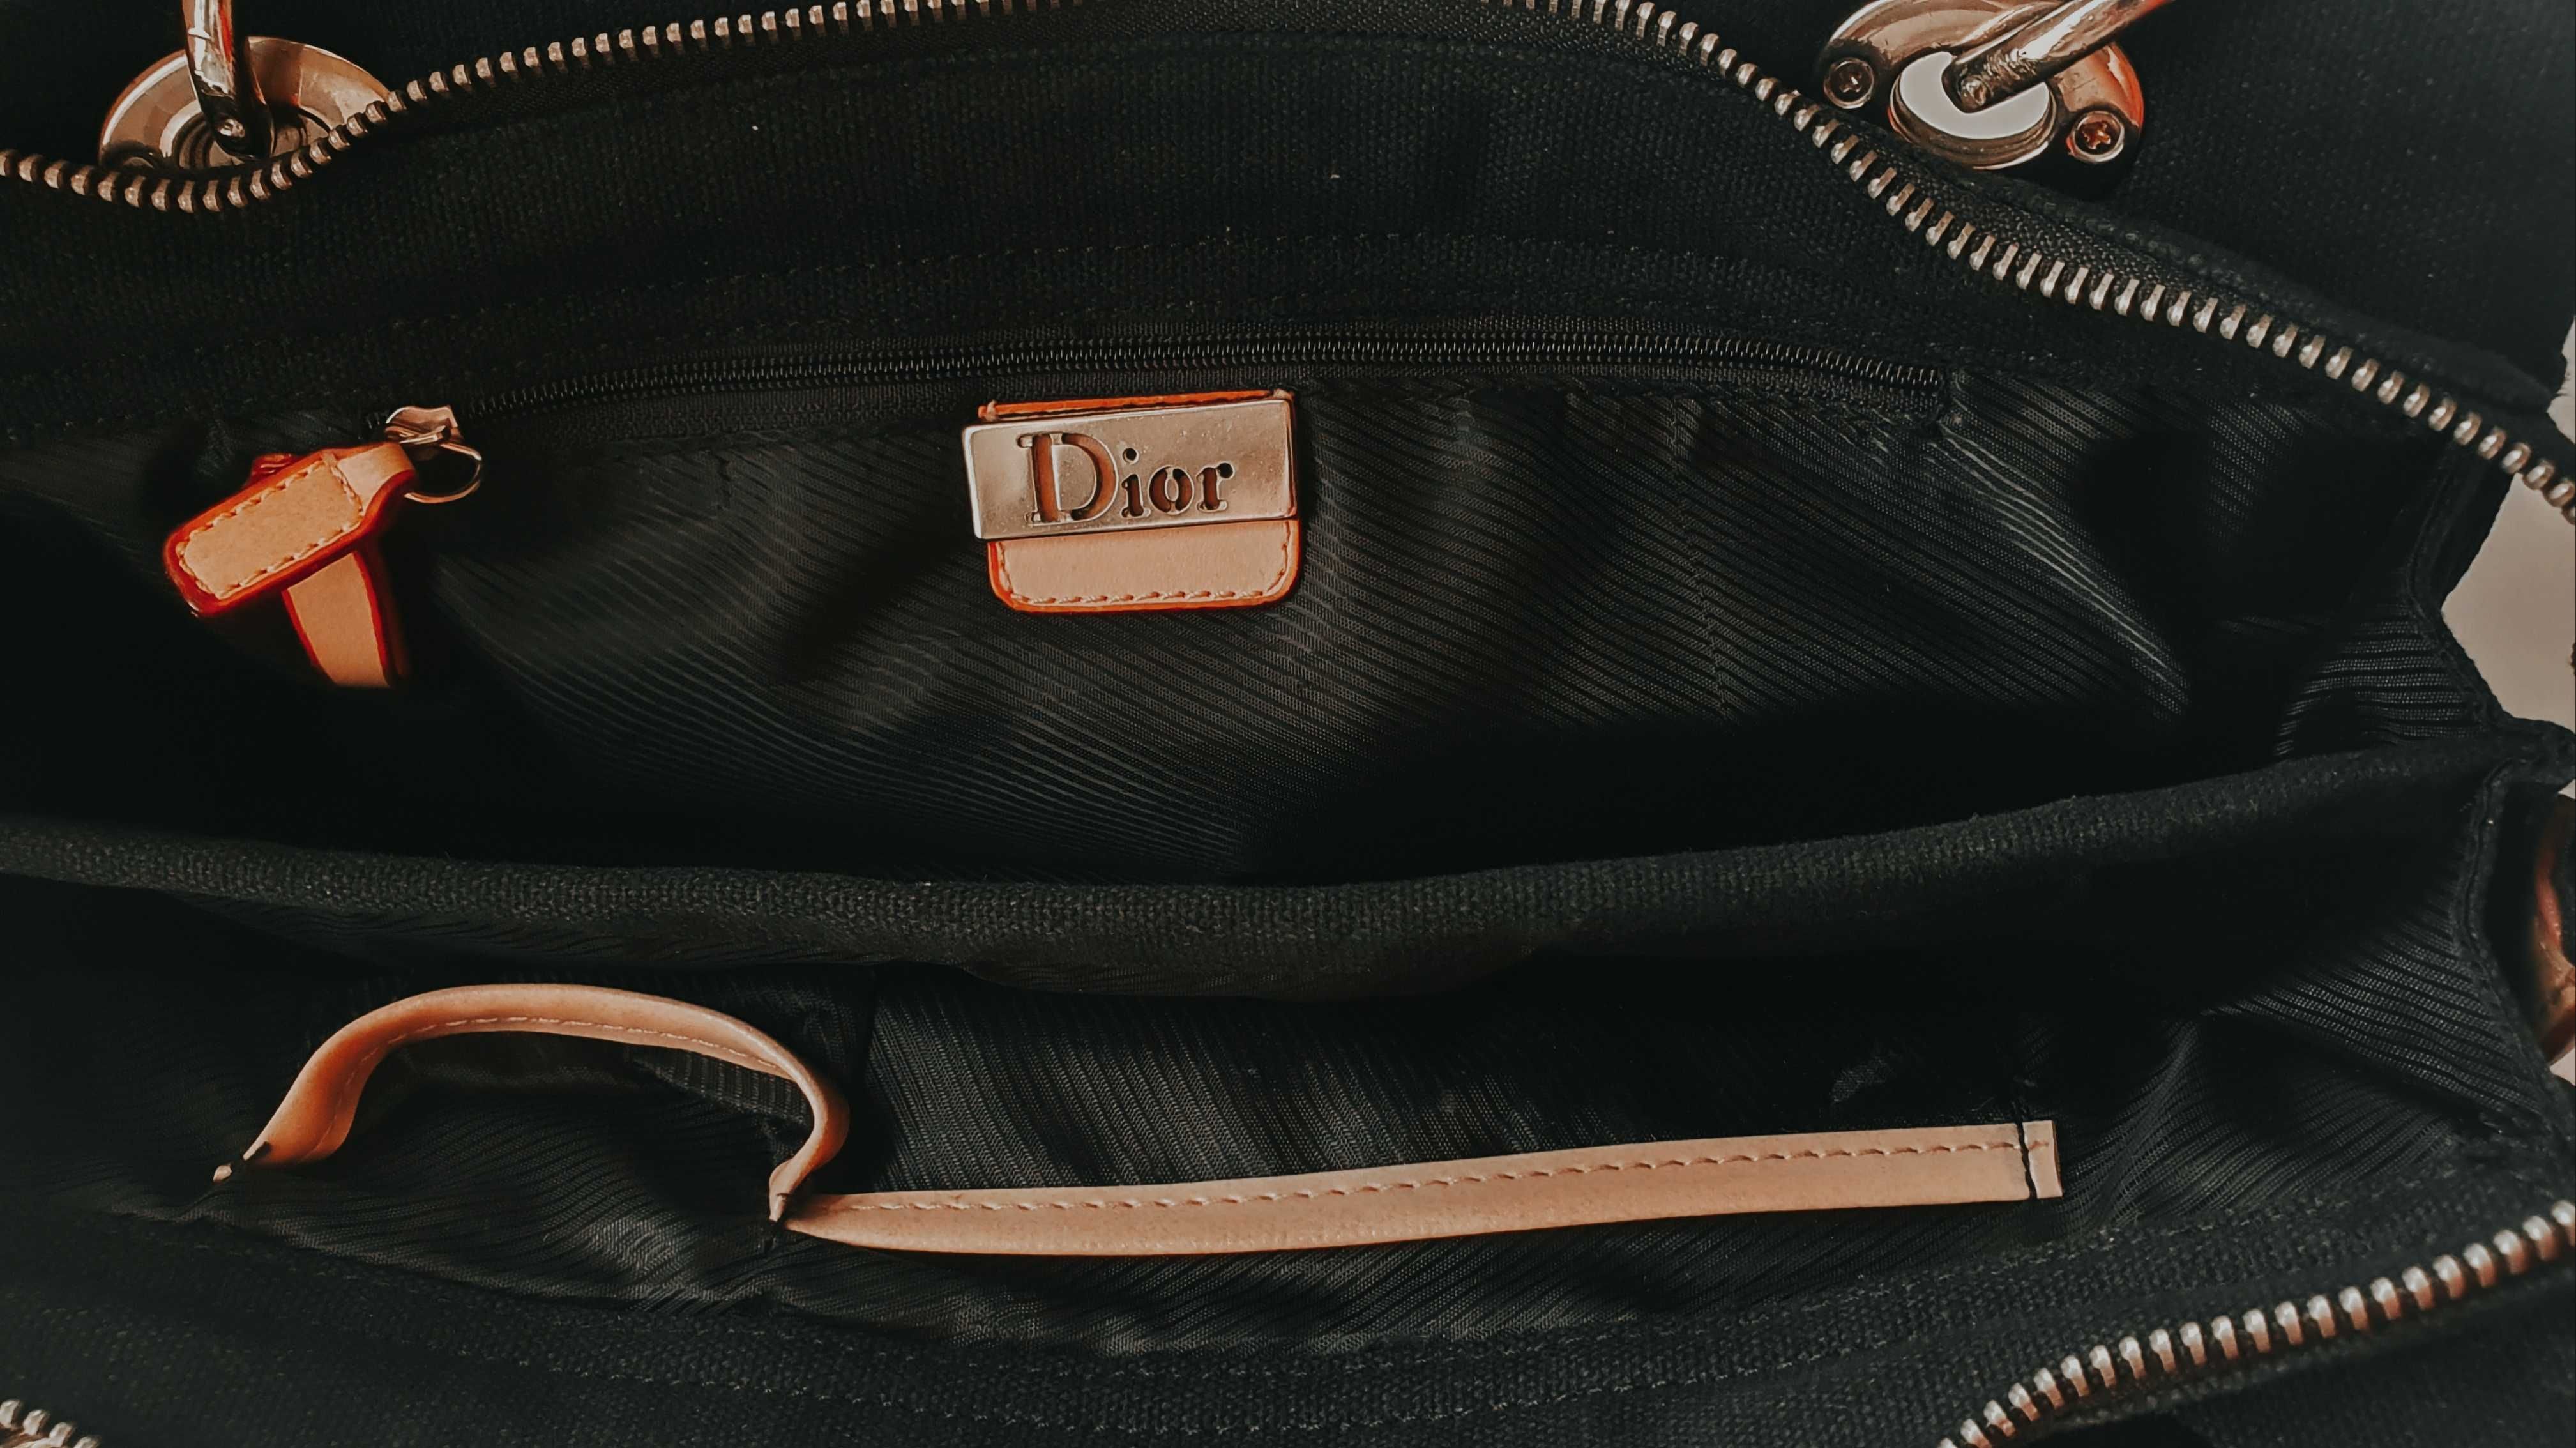 Damska mala torebka Christian Dior